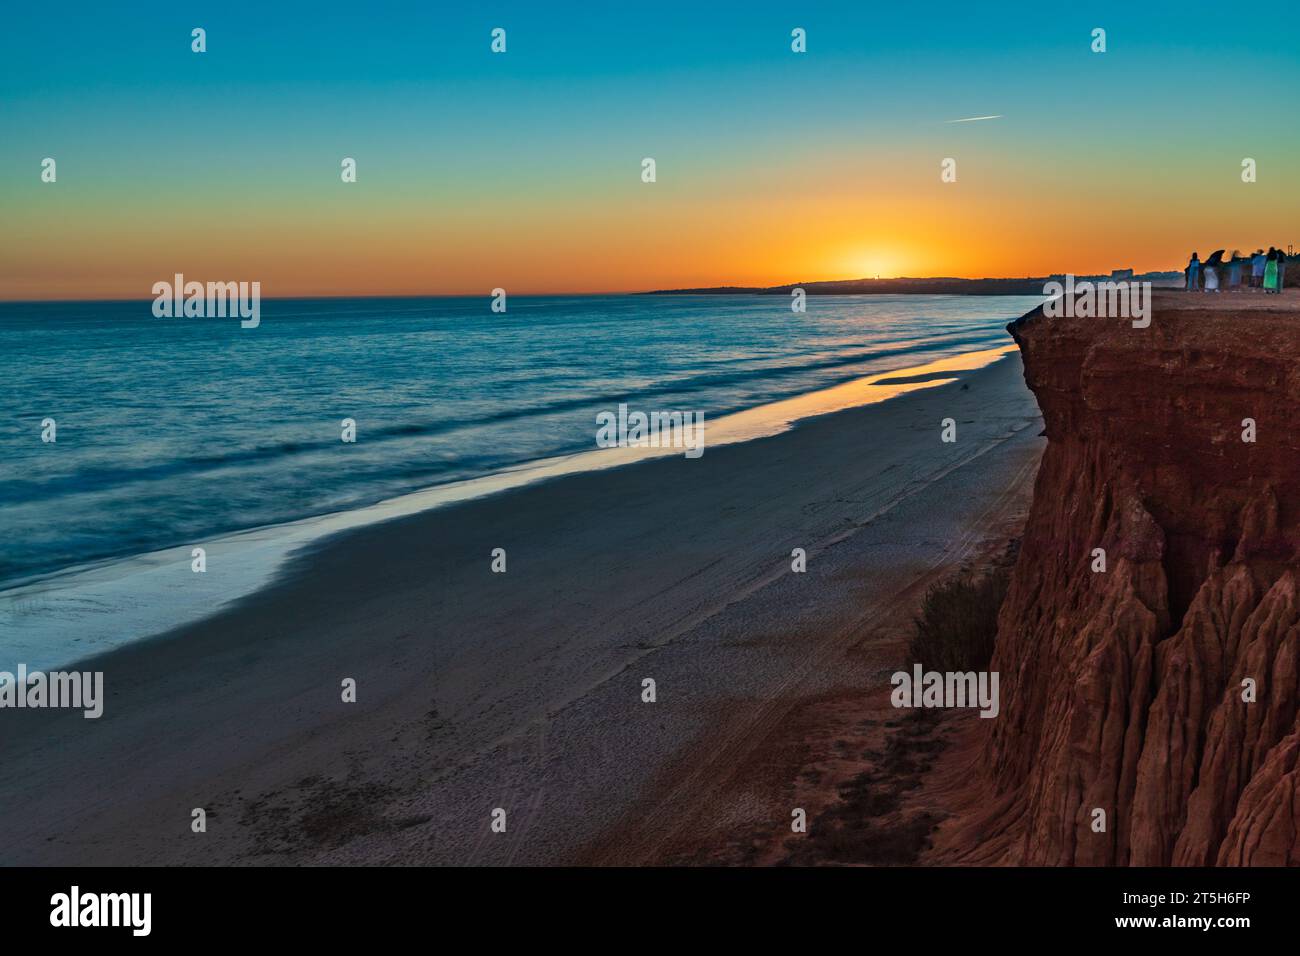 Serenità dorata: Tramonto a Praia da Falésia, Algarve, Portogallo Foto Stock